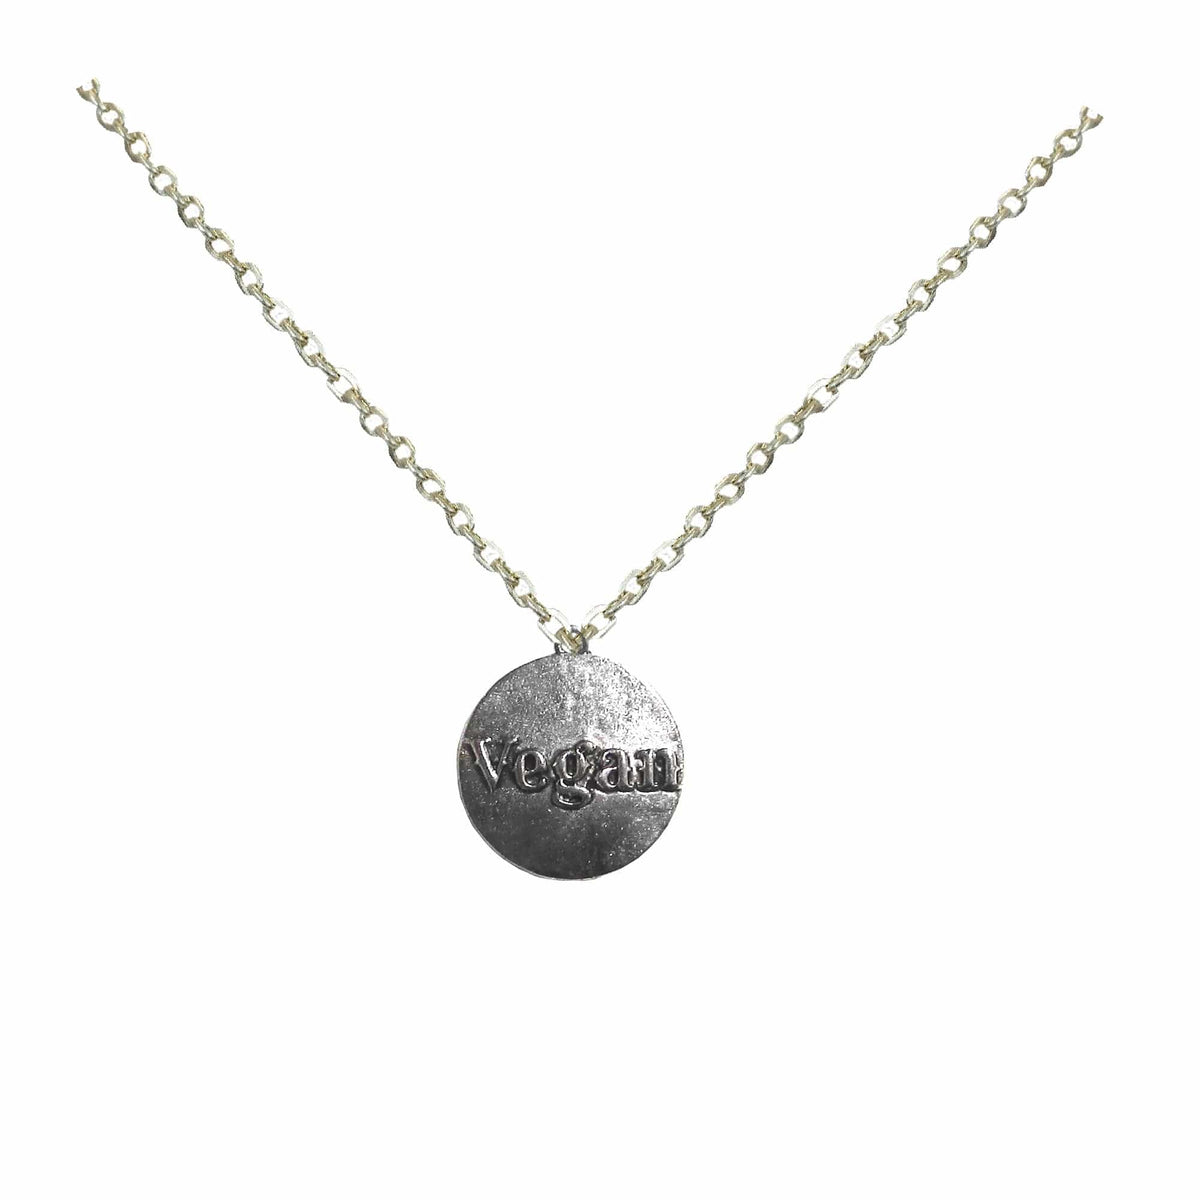 Shop Silver Vegan Statement Pendant Necklace Men Women Fashion Jewelry, Necklace, USA Boutique